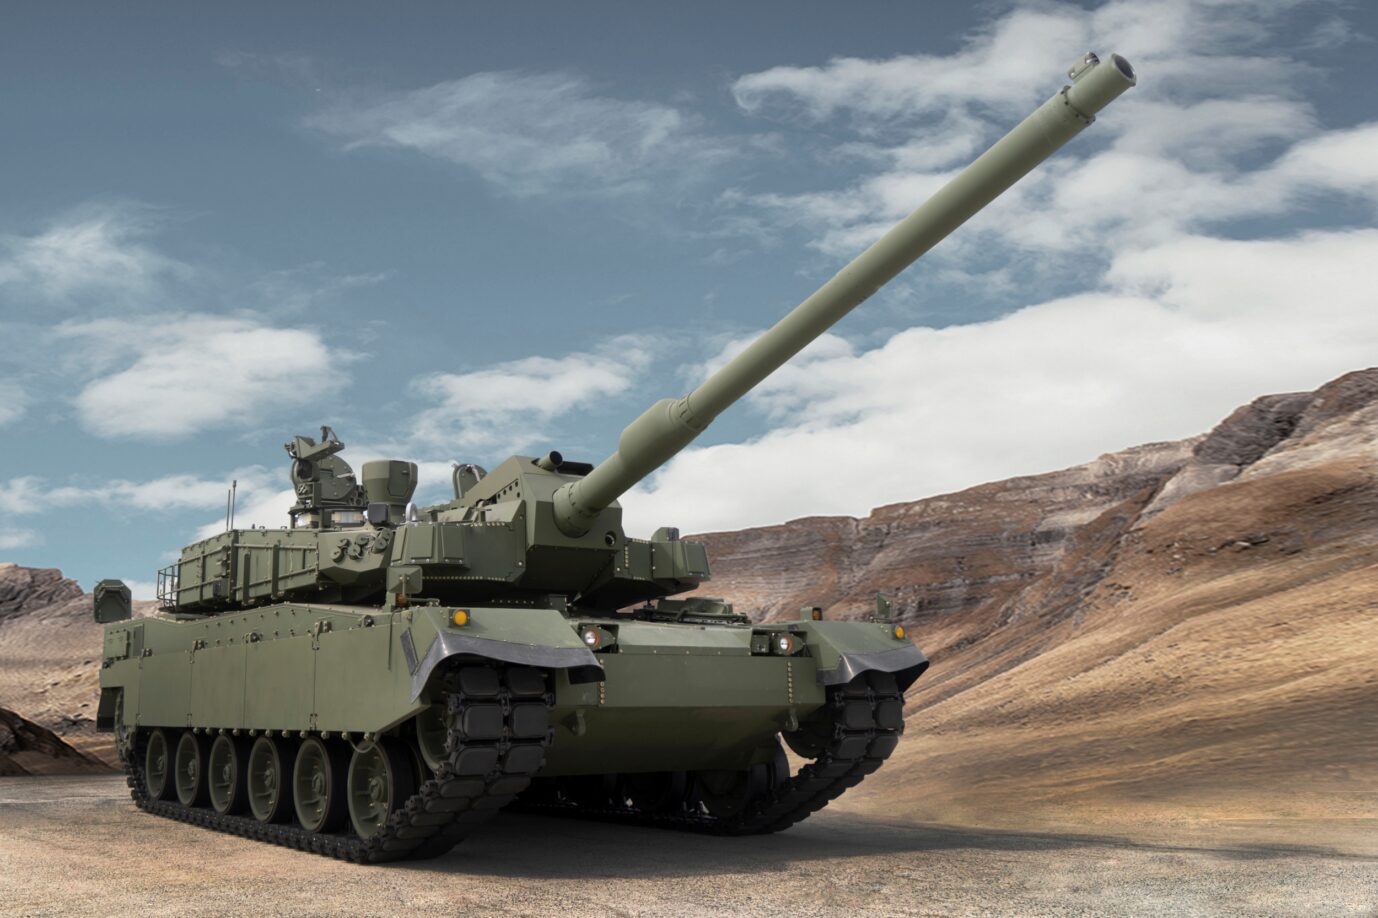 K2 Kampfpanzer von Hyundai Rotem: Die Südkoreaner rüsten Polen aus.